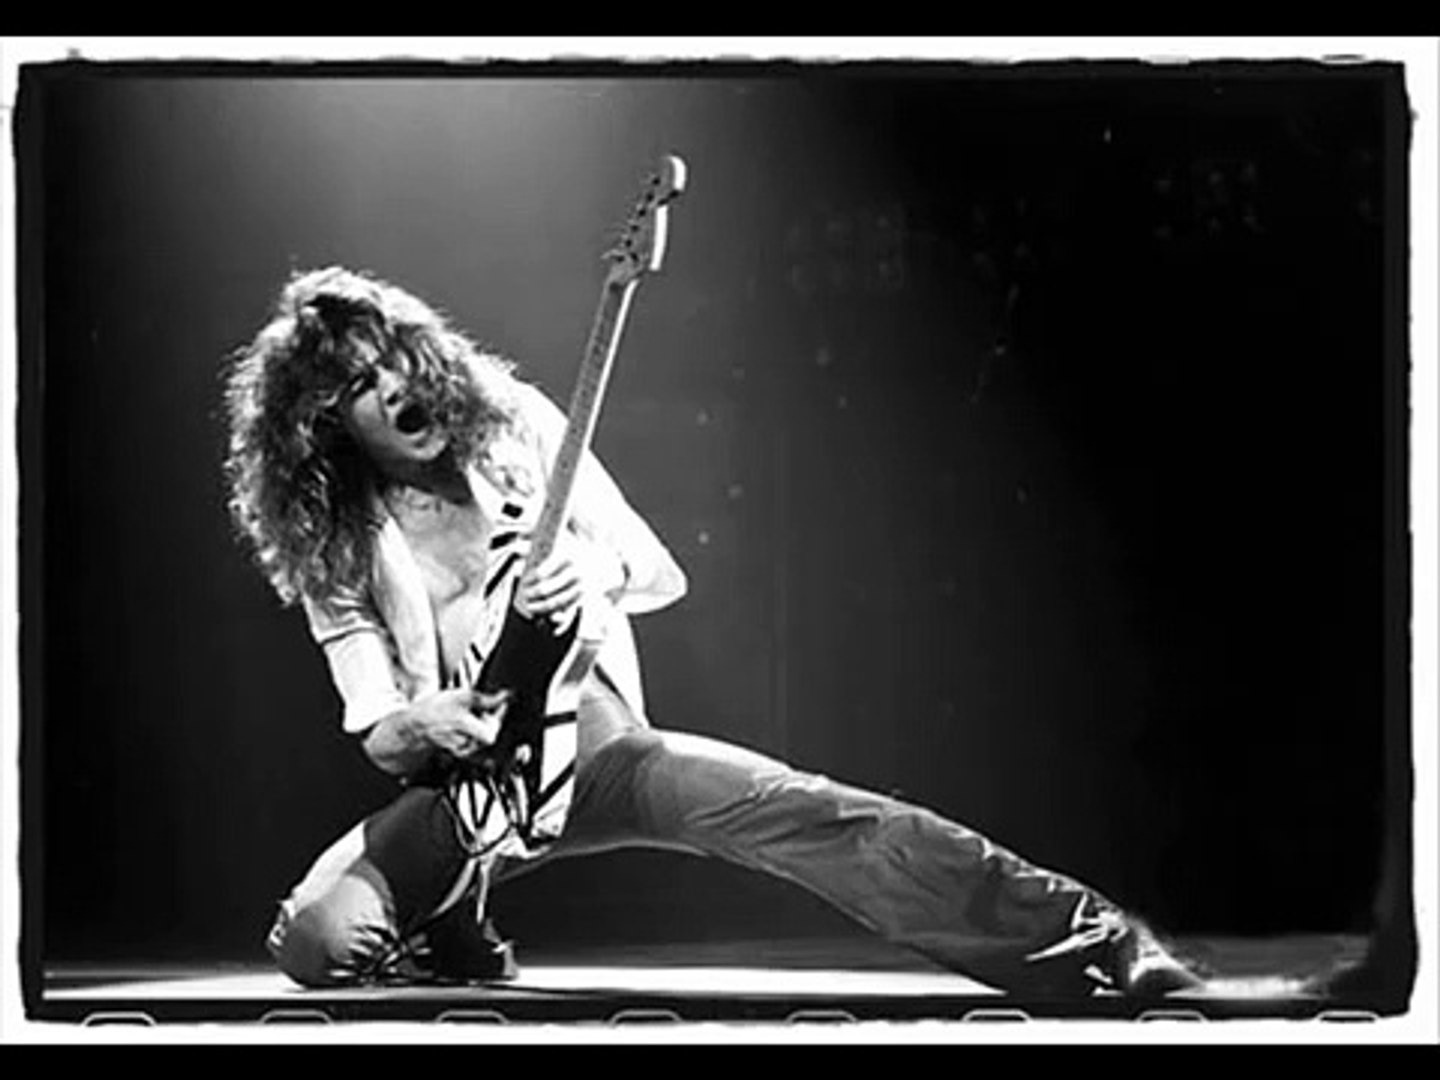 Eddie Van Halen - Top Gun Theme